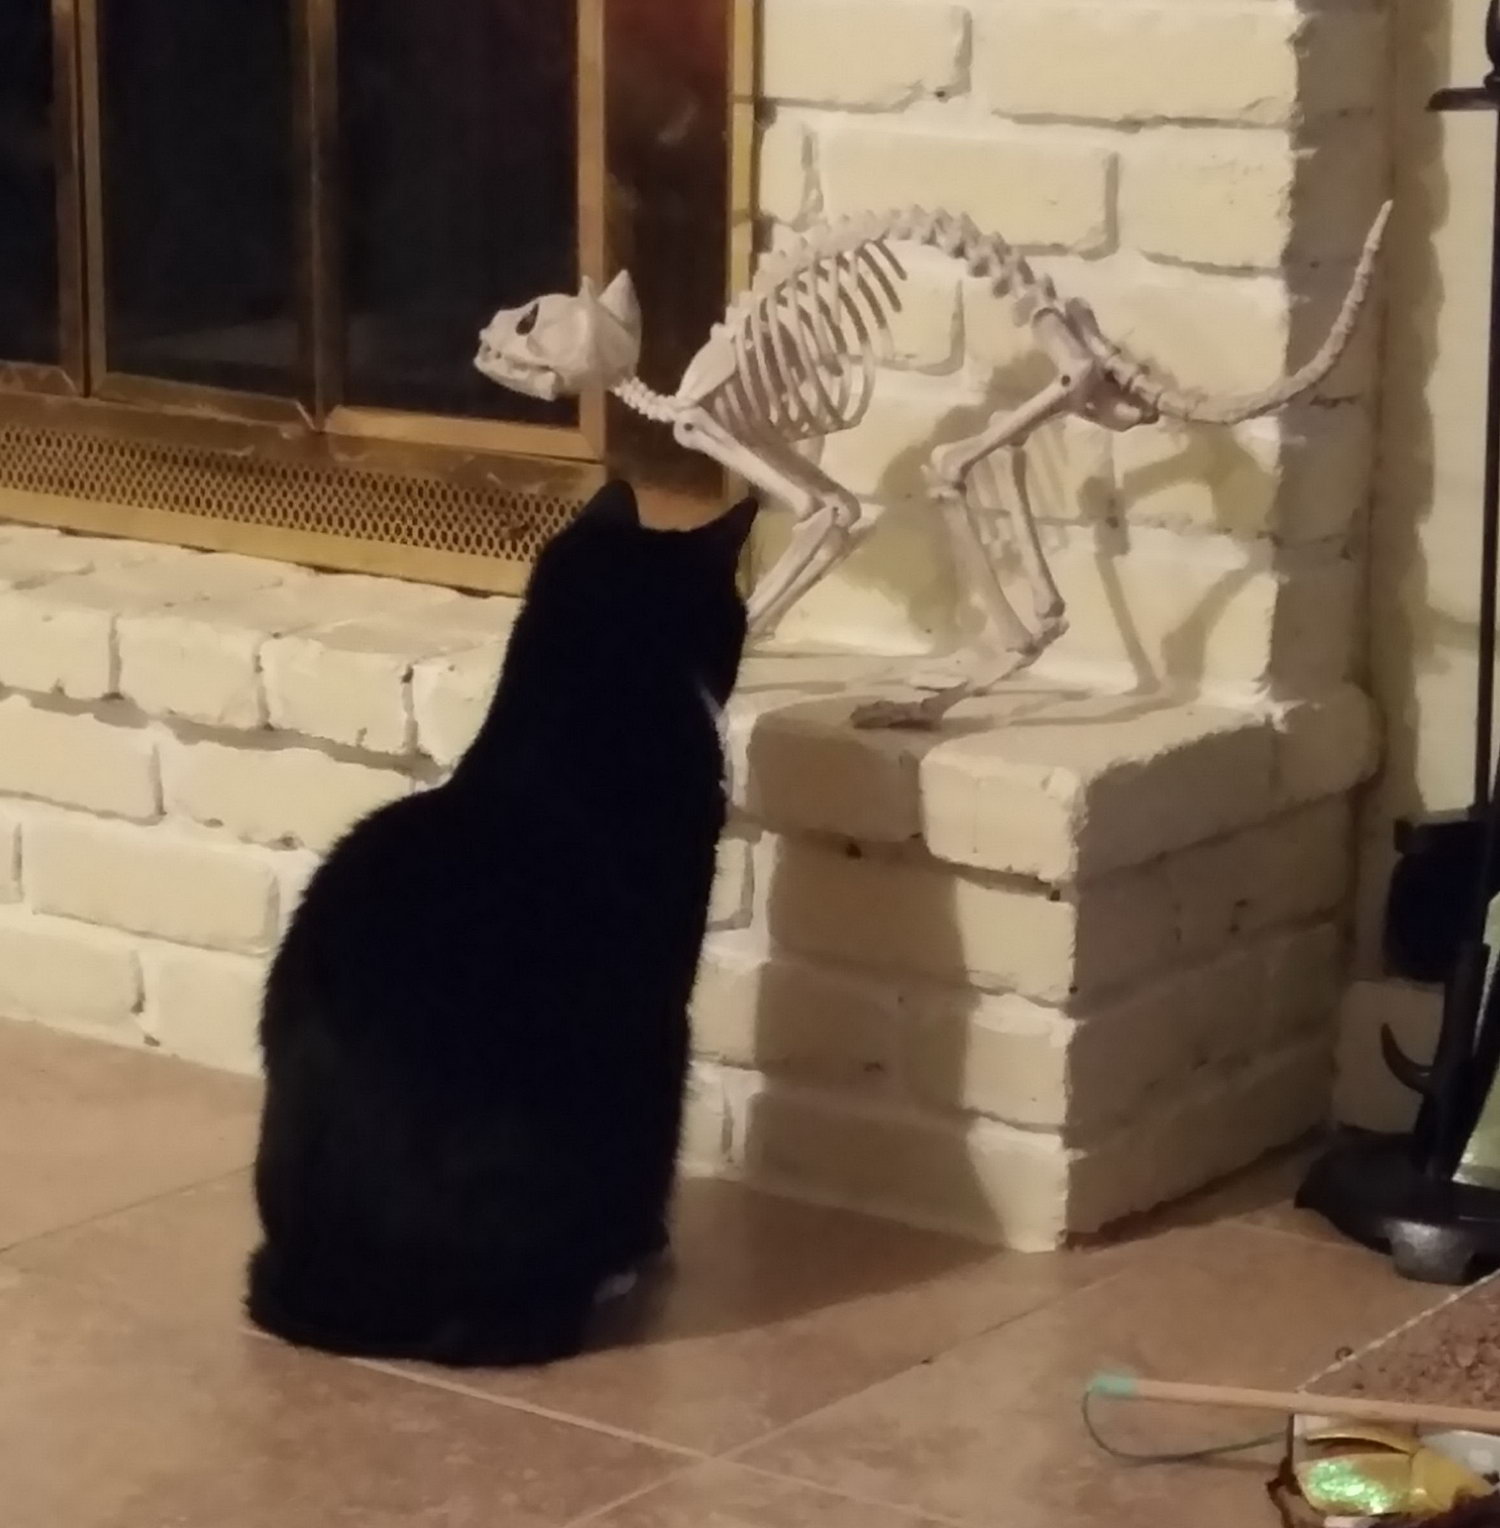 cat looks at prop cat skeleton